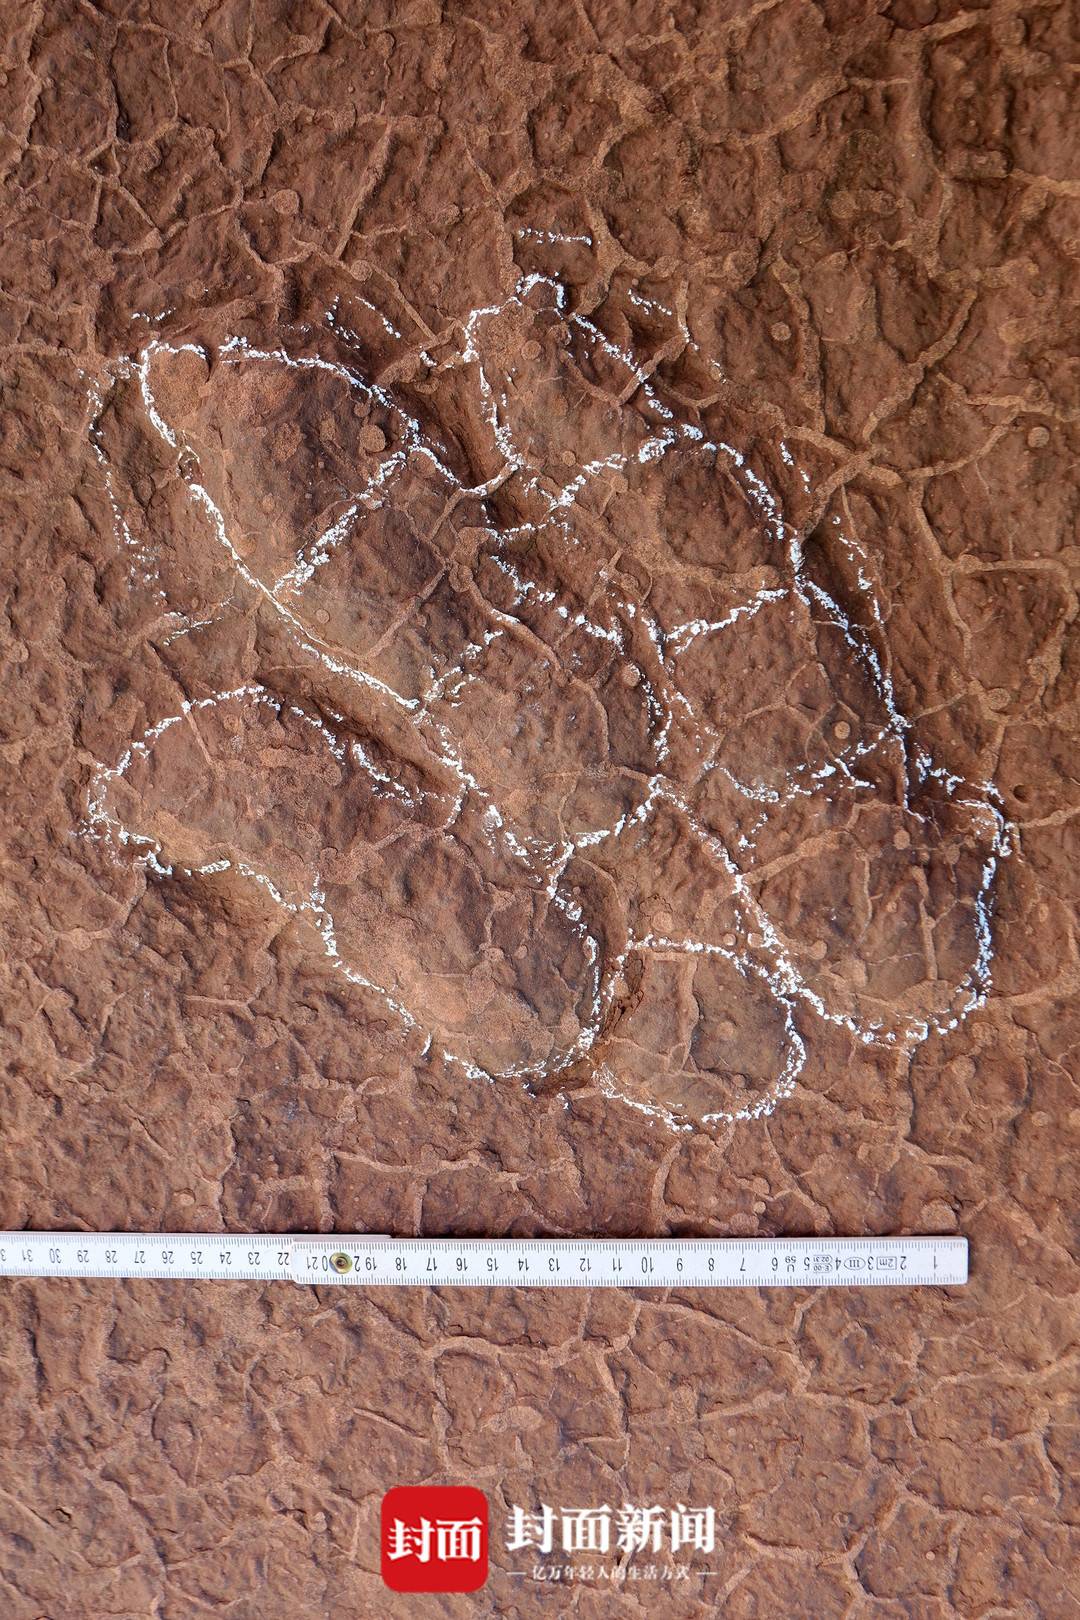 四川省泸州市古蔺县黄荆镇发现一批保存良好的白垩纪恐龙足迹化石